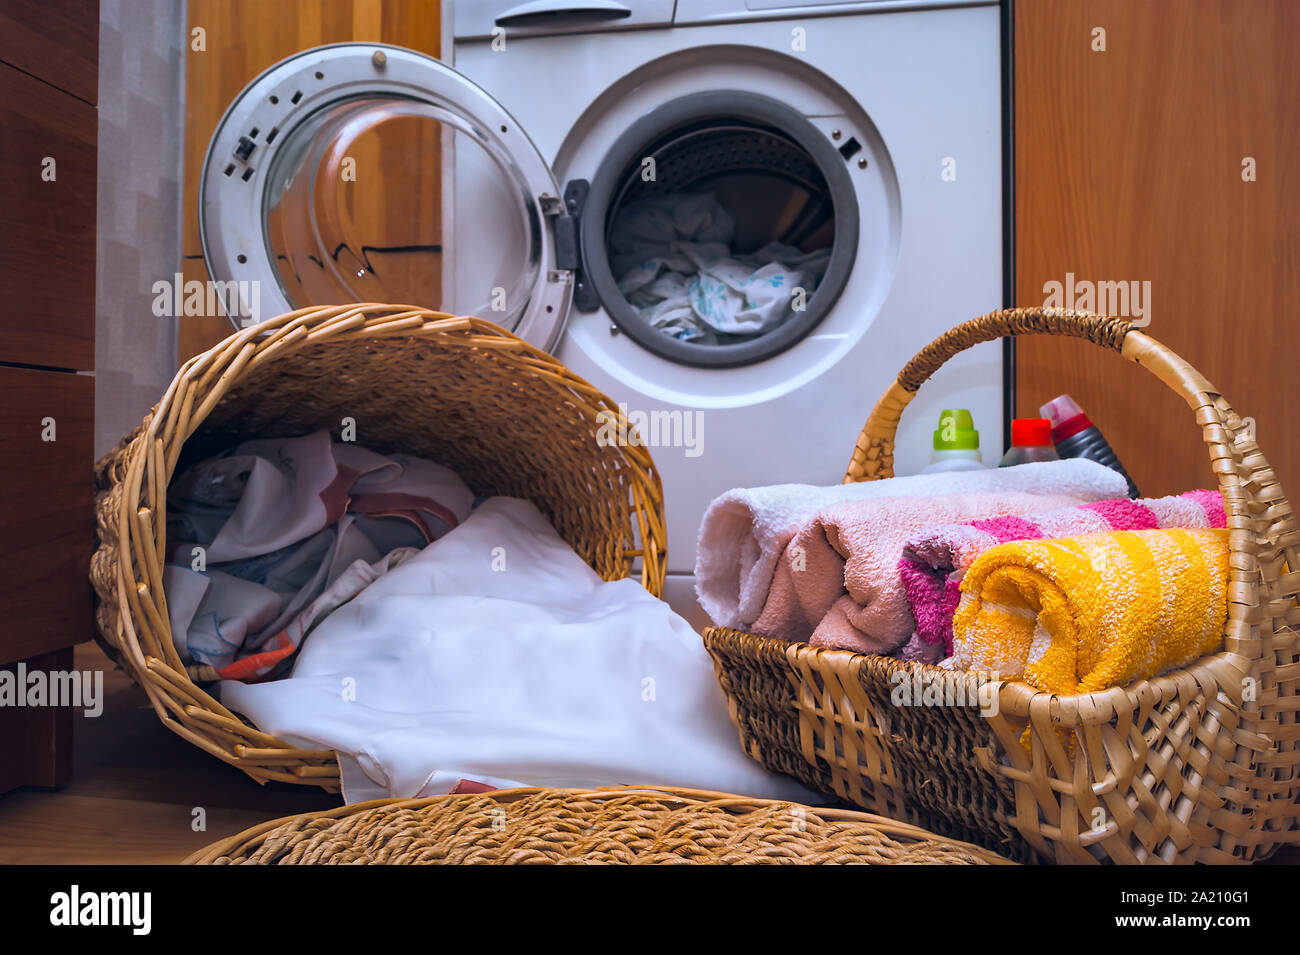 Saubere Handtücher, schmutzige Wäsche in der korbwaren Wäschekörbe,  flüssige Waschmittel auf dem Boden in der Nähe der vorderen Last  Waschmaschine mit geöffneter Tür. Haus Interi Stockfotografie - Alamy